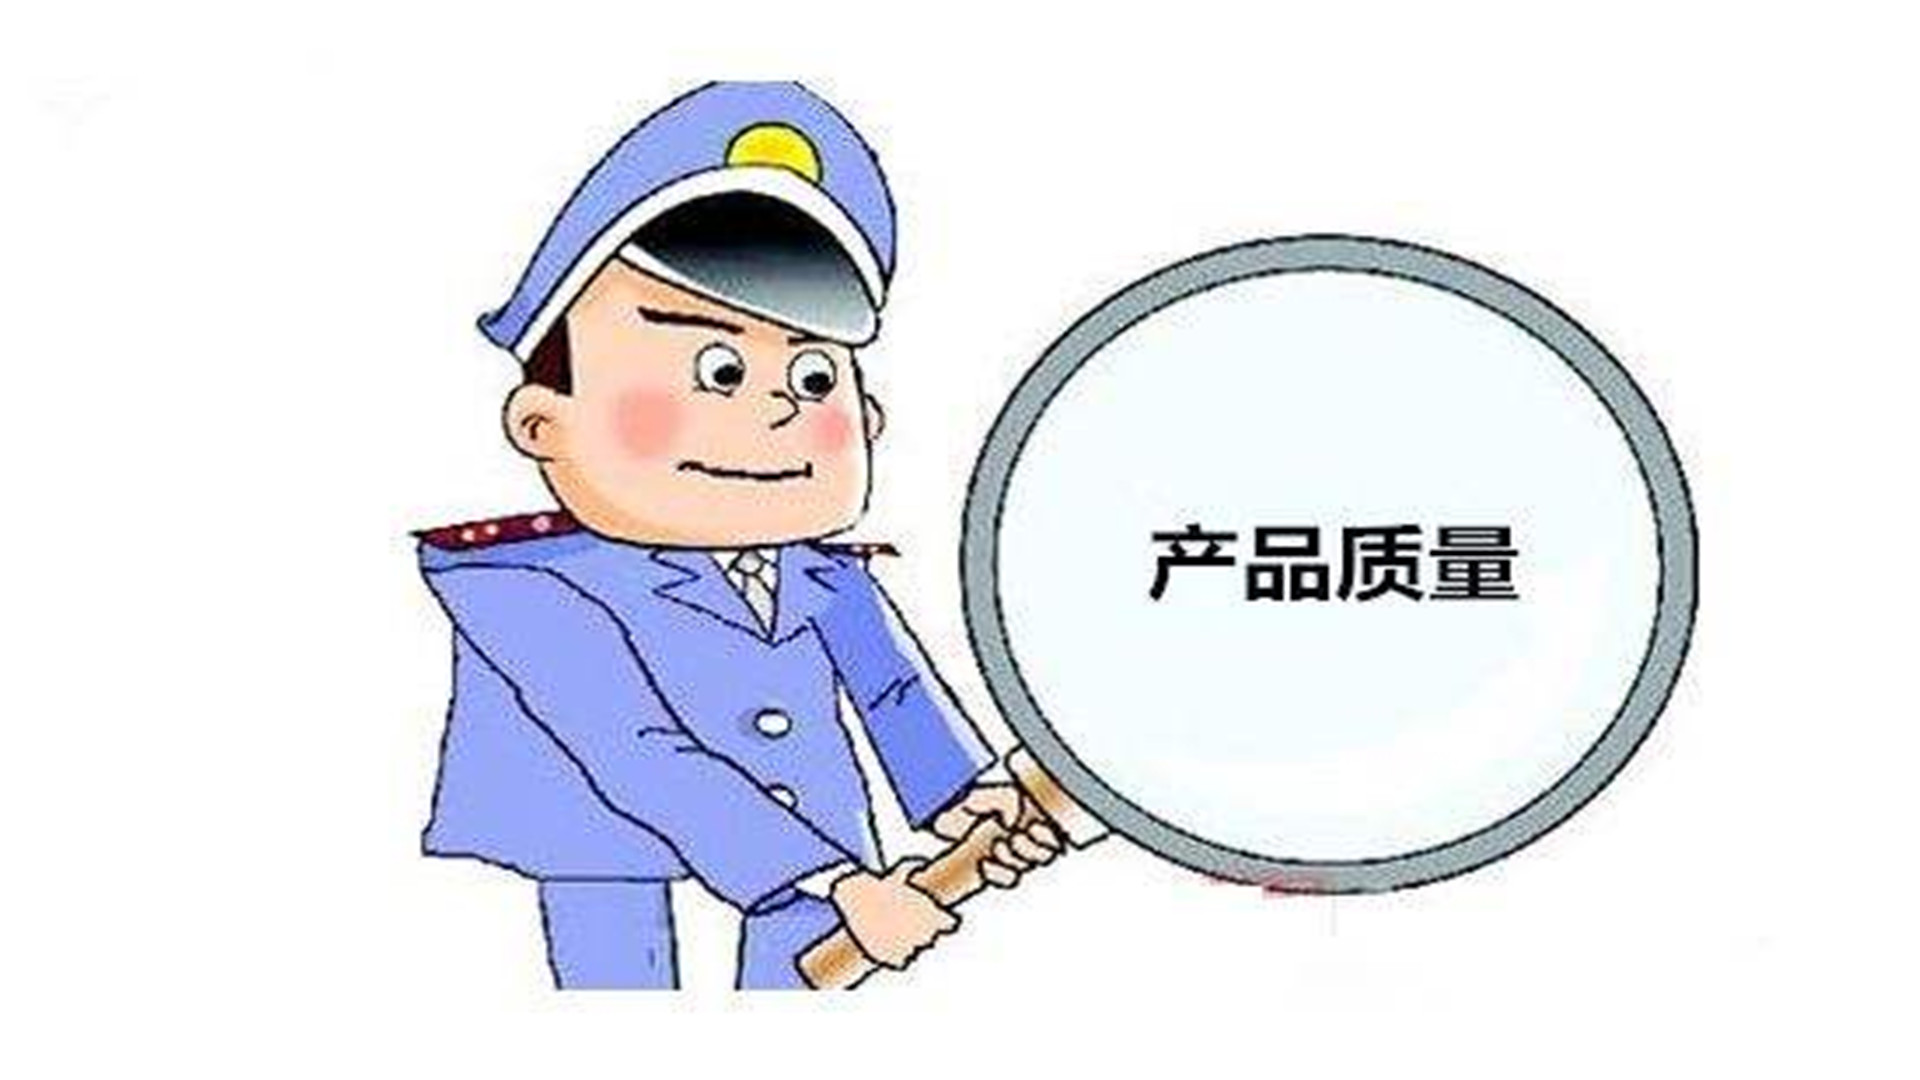 安徽省质监局:抽查20组保温材料样品,合格率100%